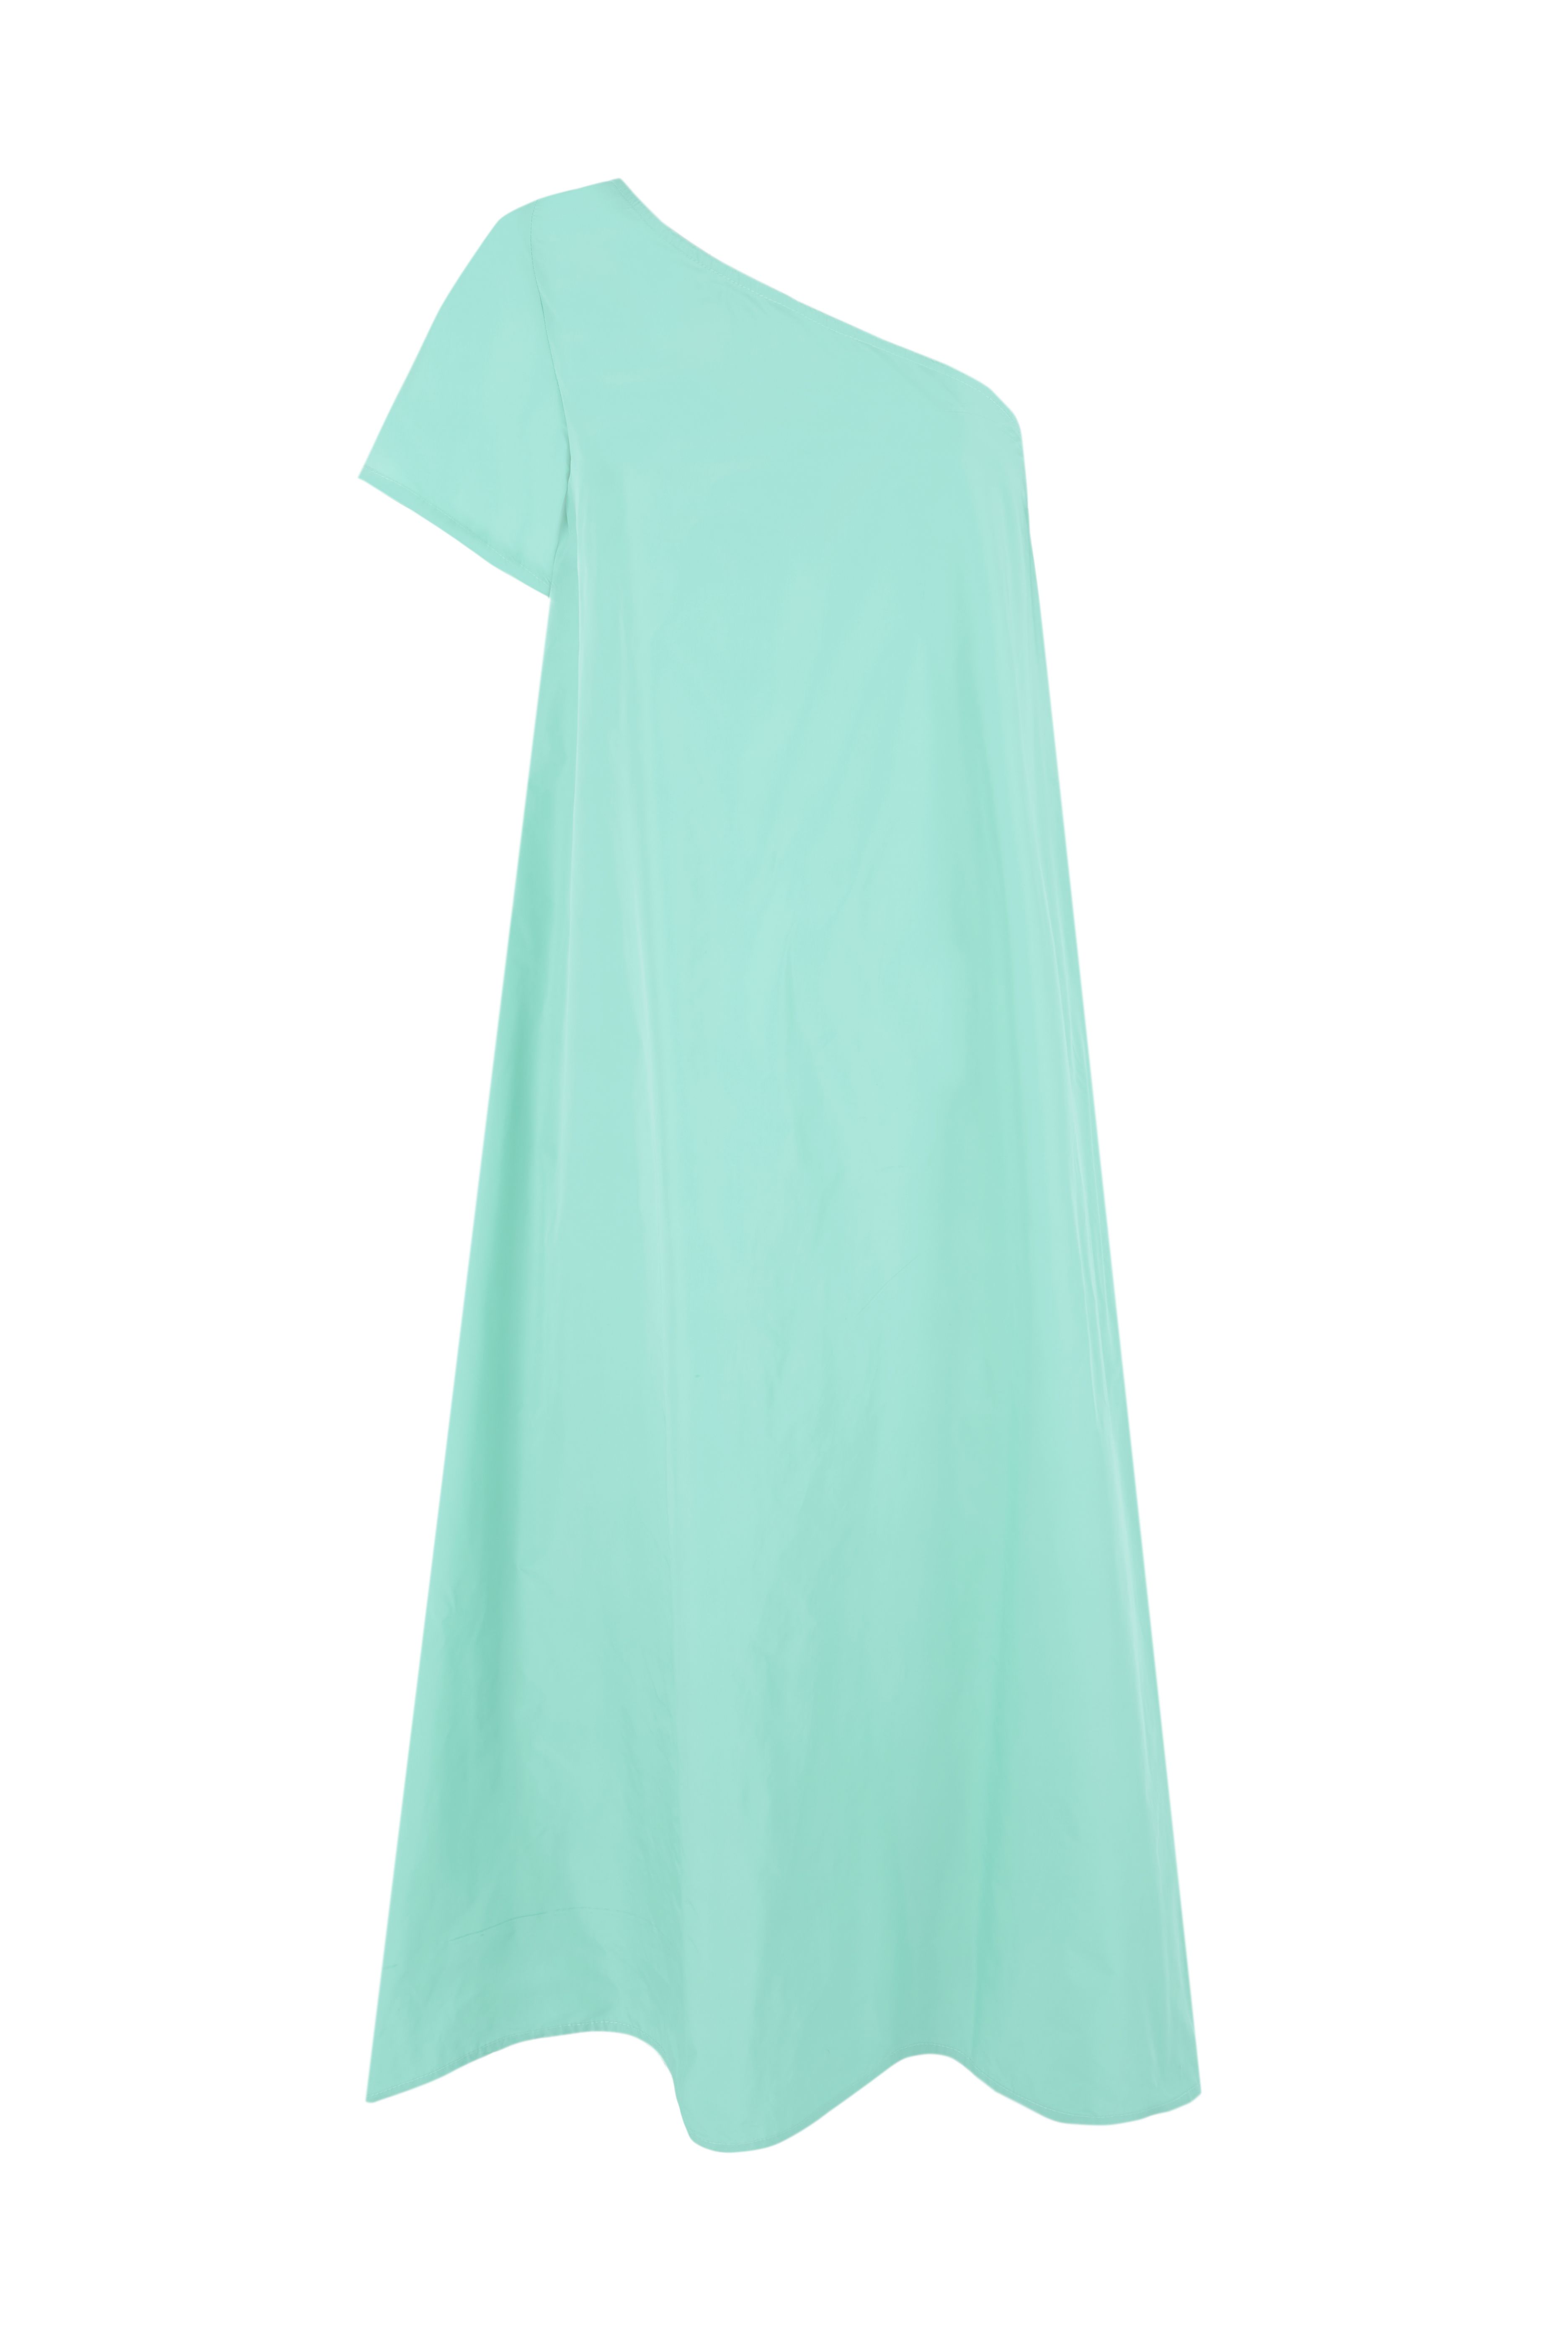 Viajamos al minimalismo de los noventa con estos nueve vestidos lisos  entallados (minis y midis) de tirantes finos